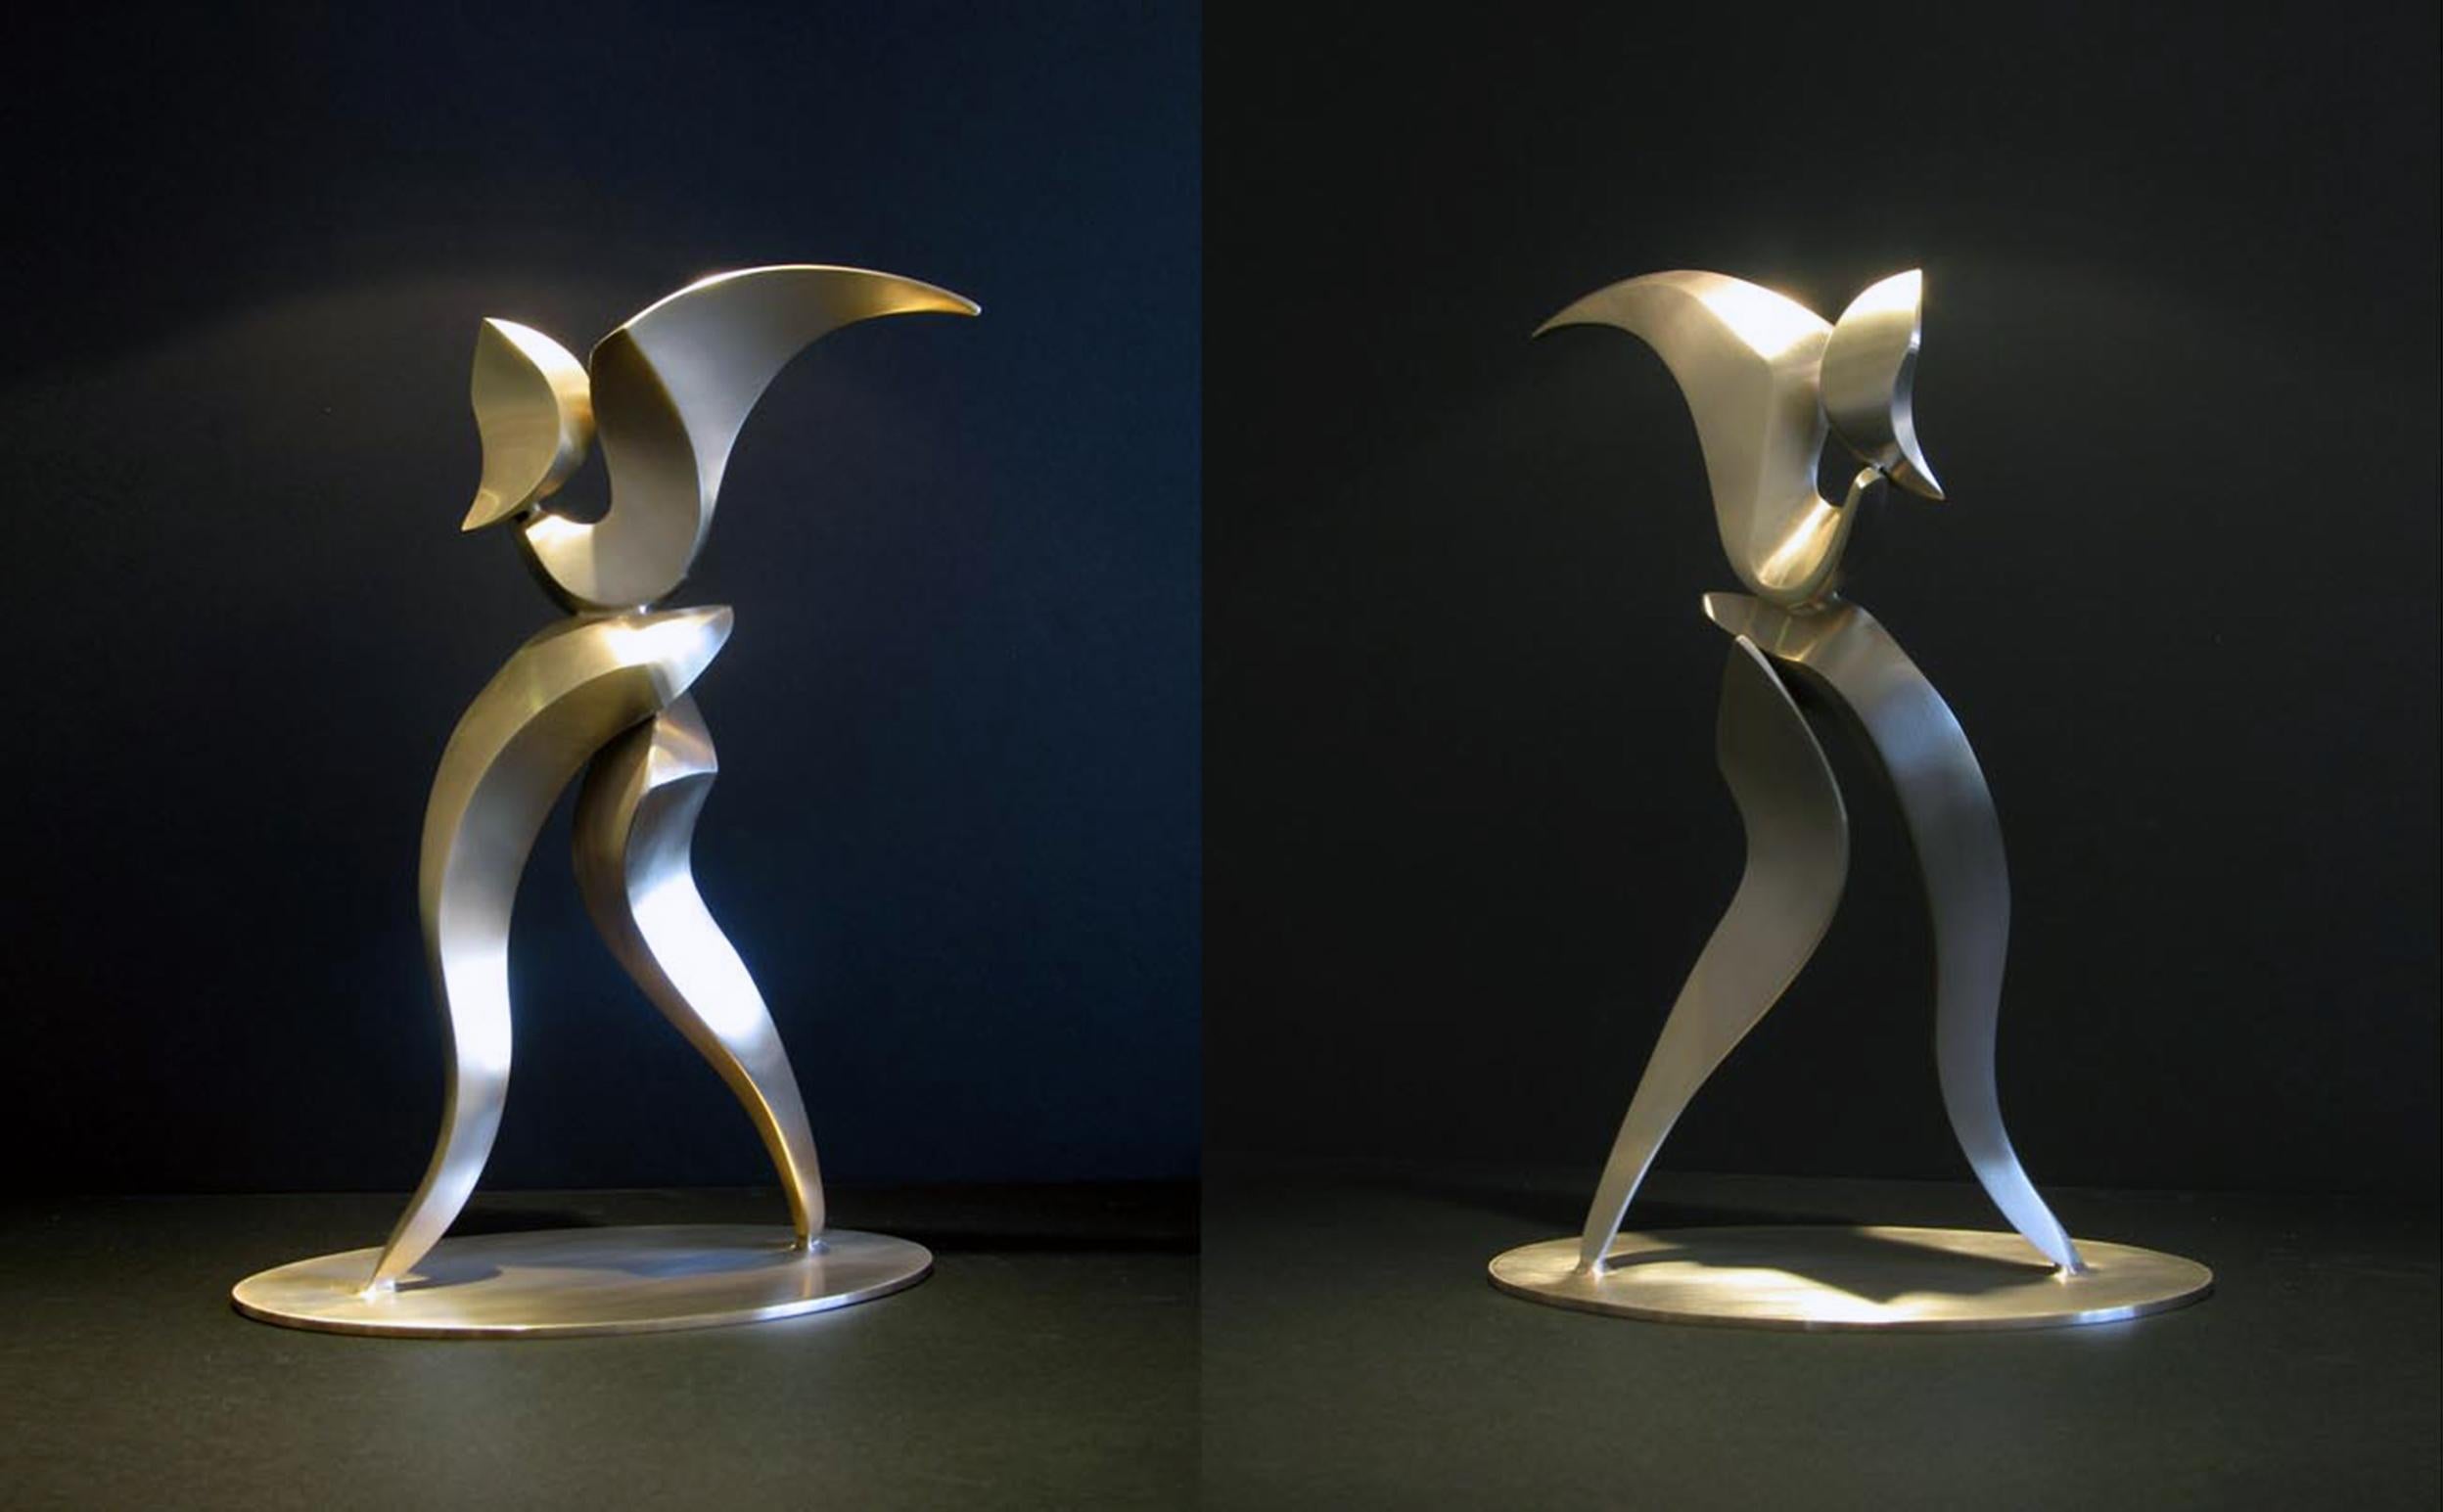 DANCER 4 - Sculpture by Lyle London